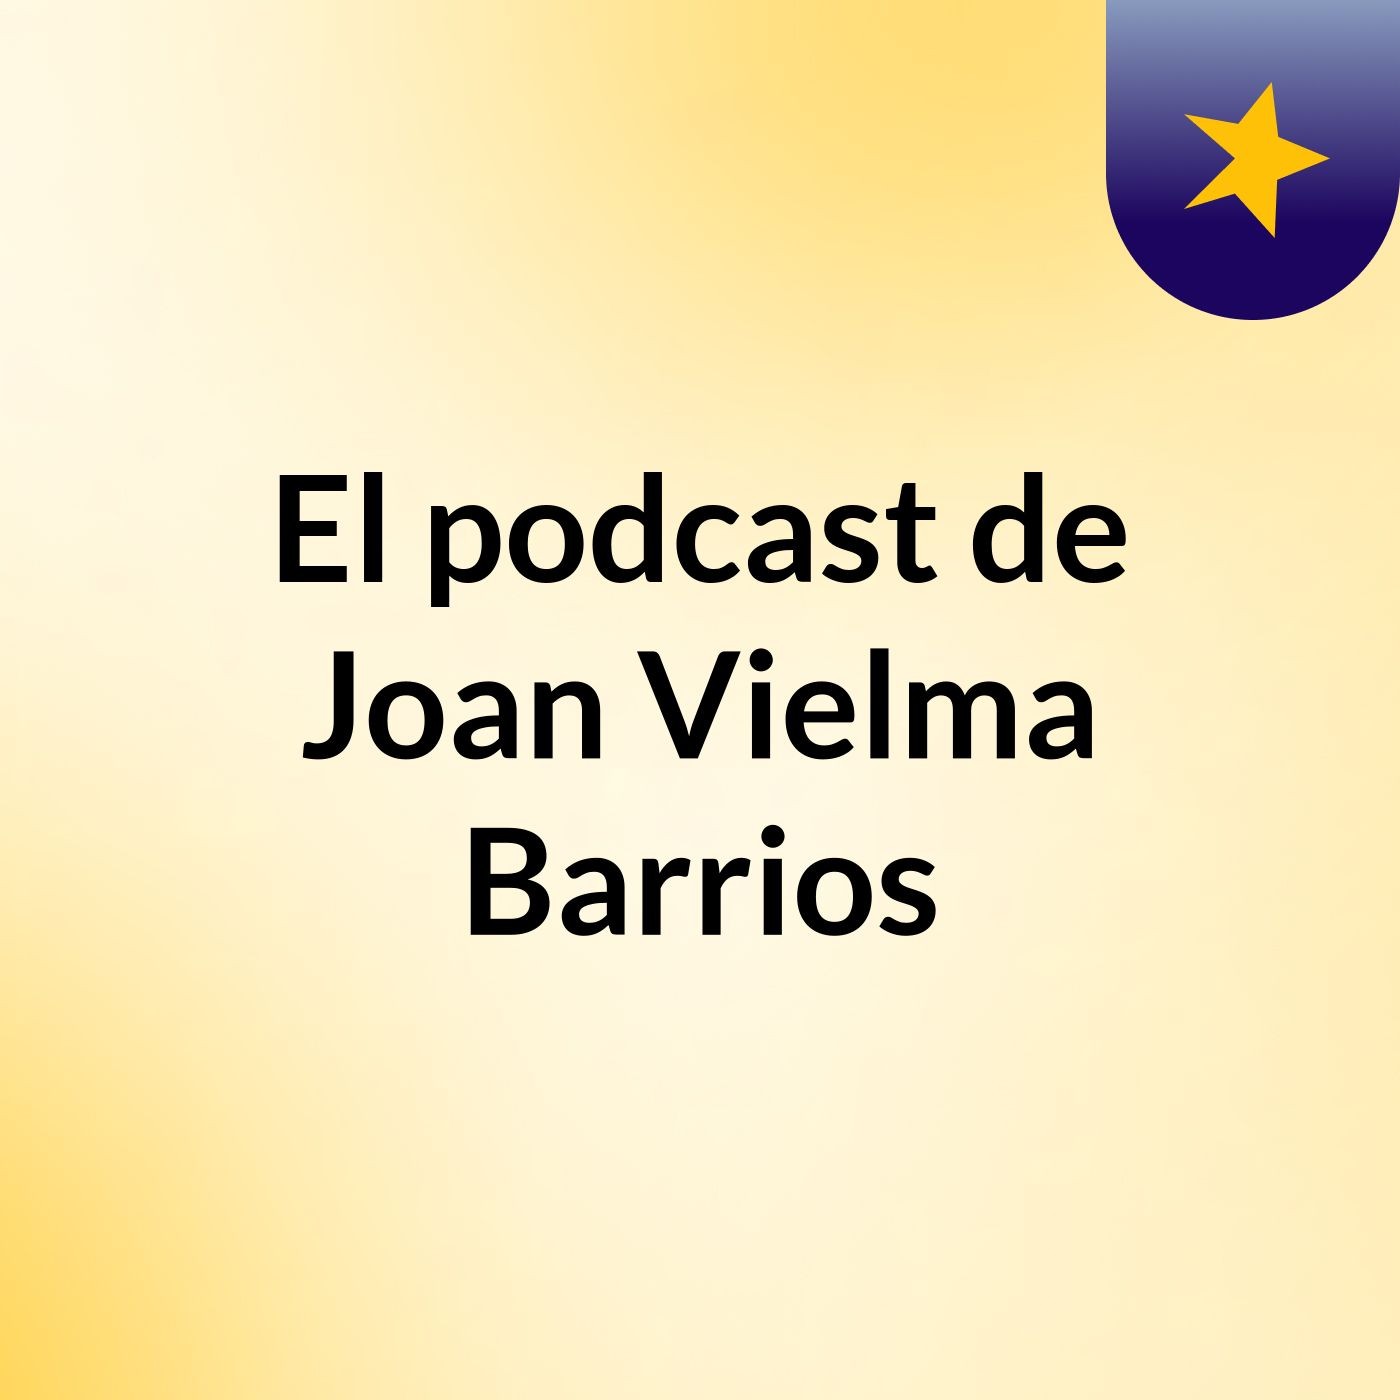 El podcast de Joan Vielma Barrios